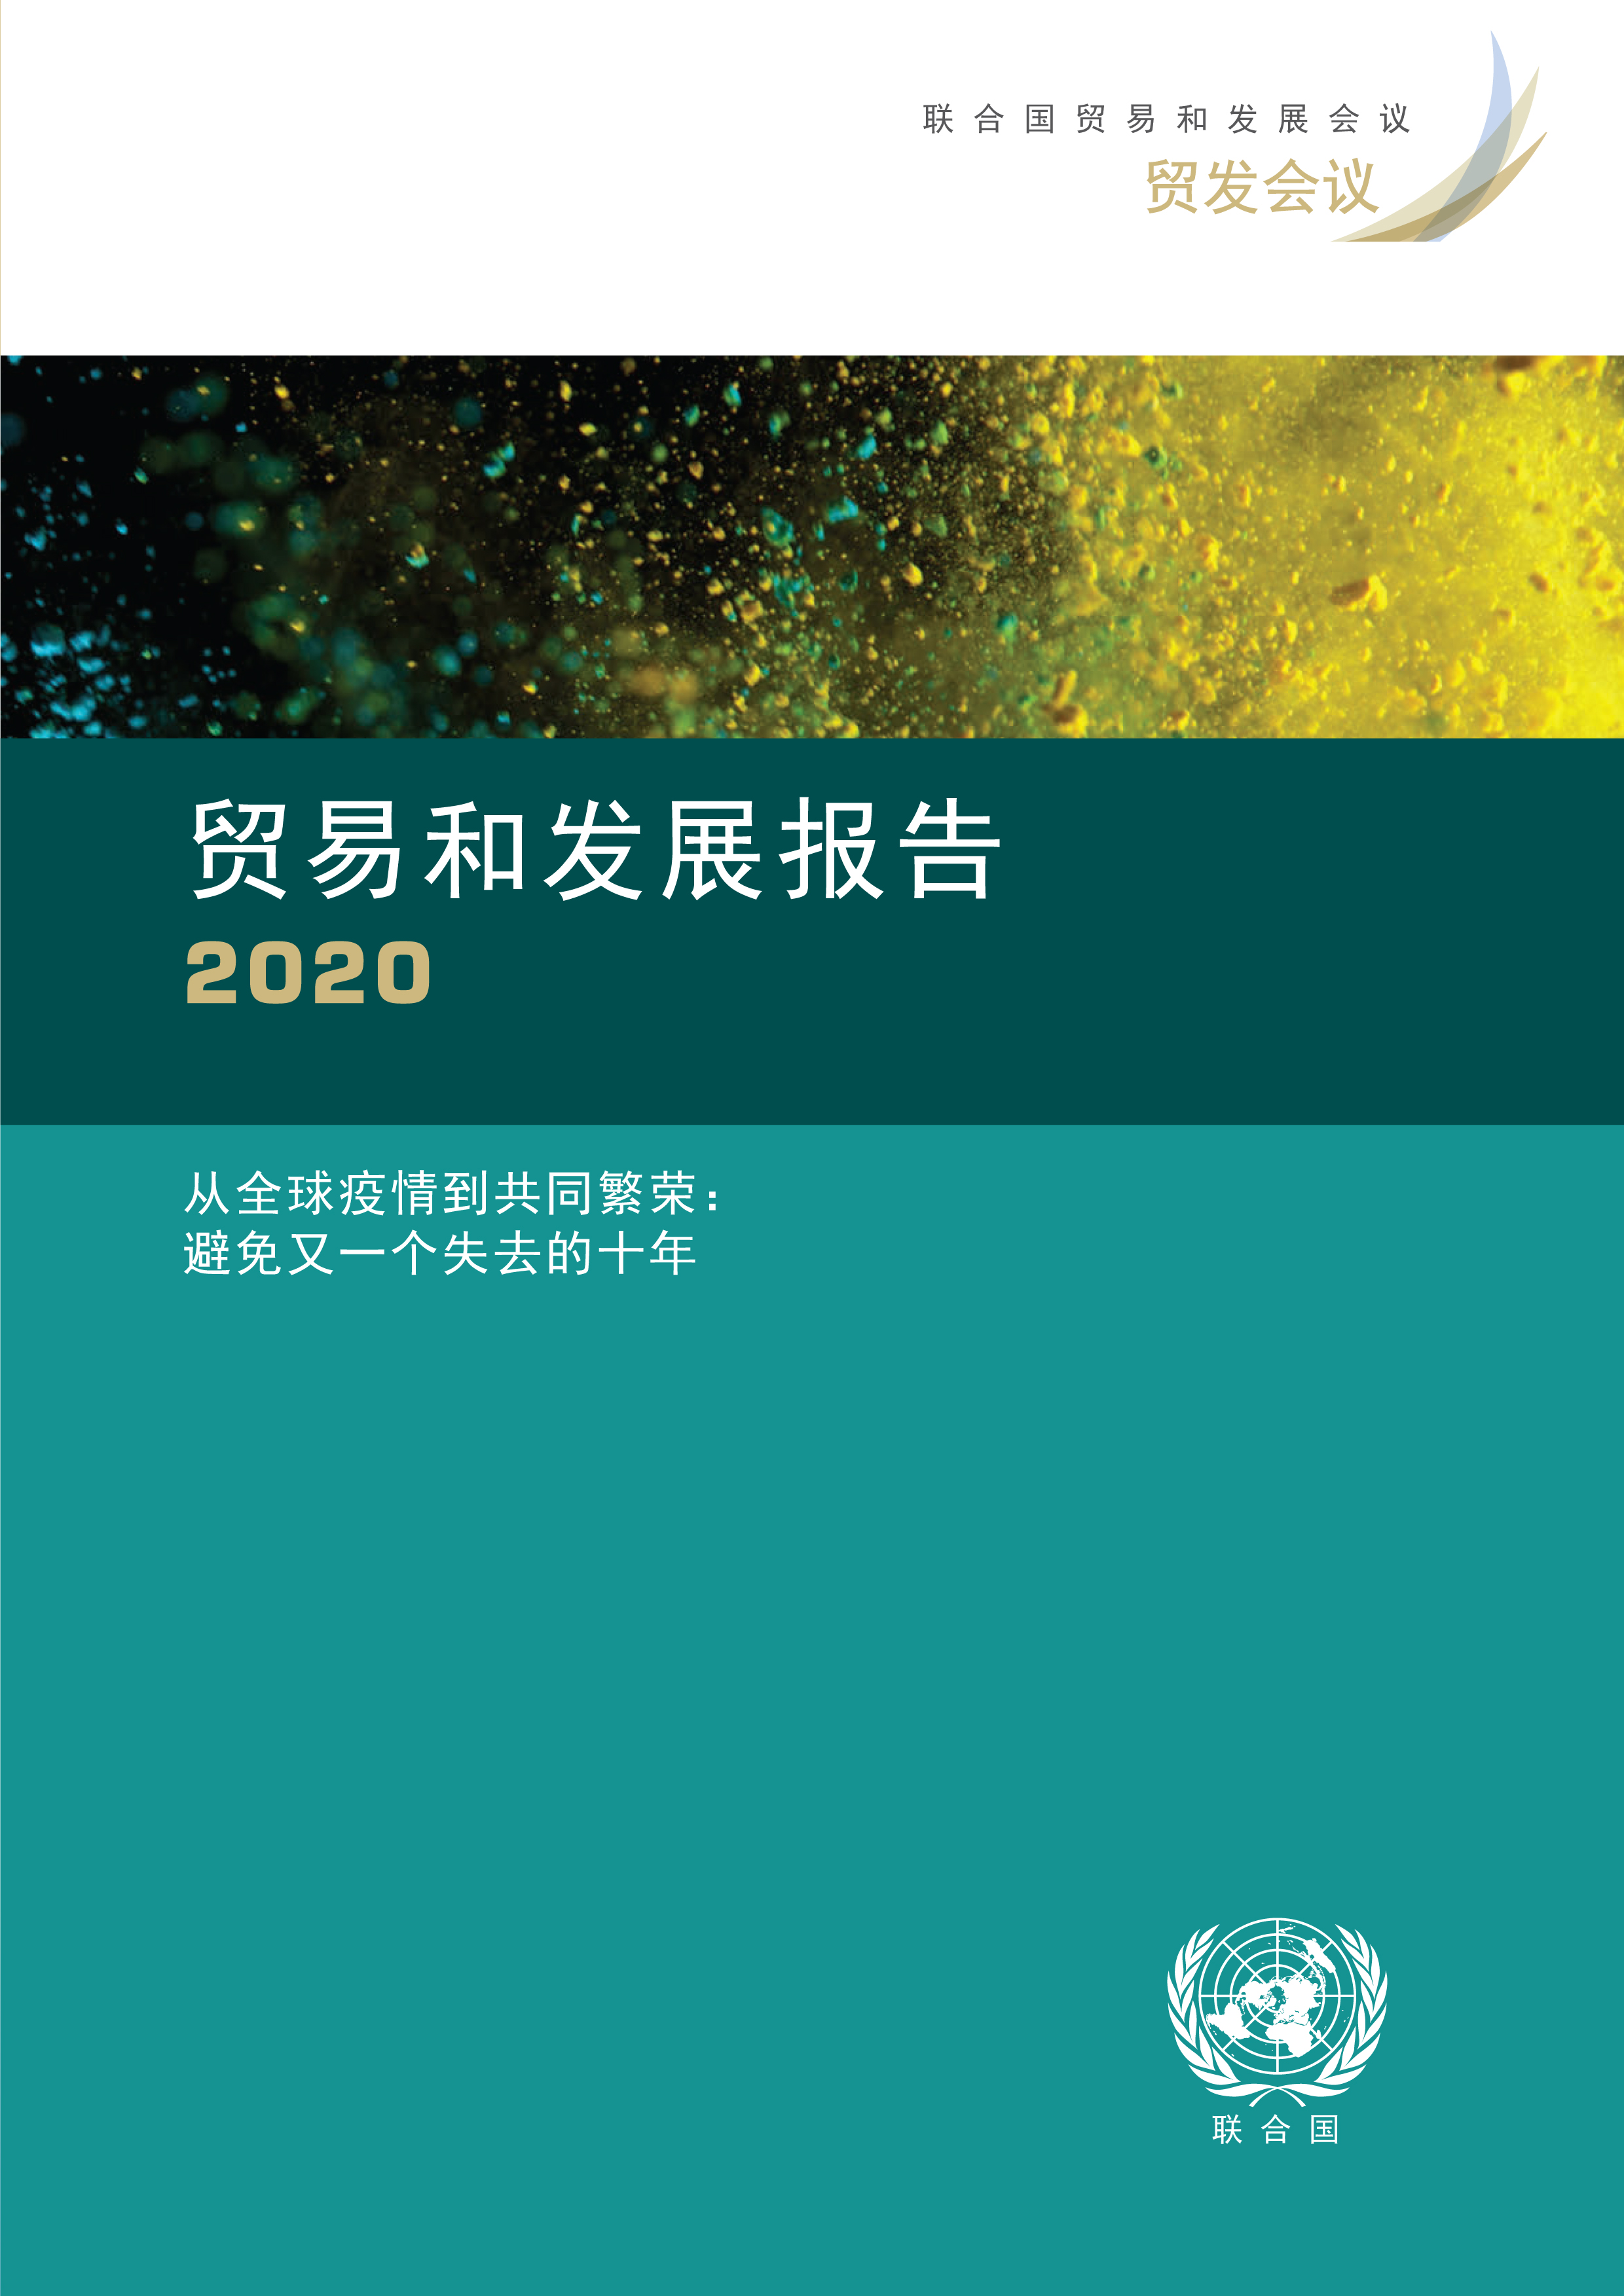 image of 贸易和发展报告 2020